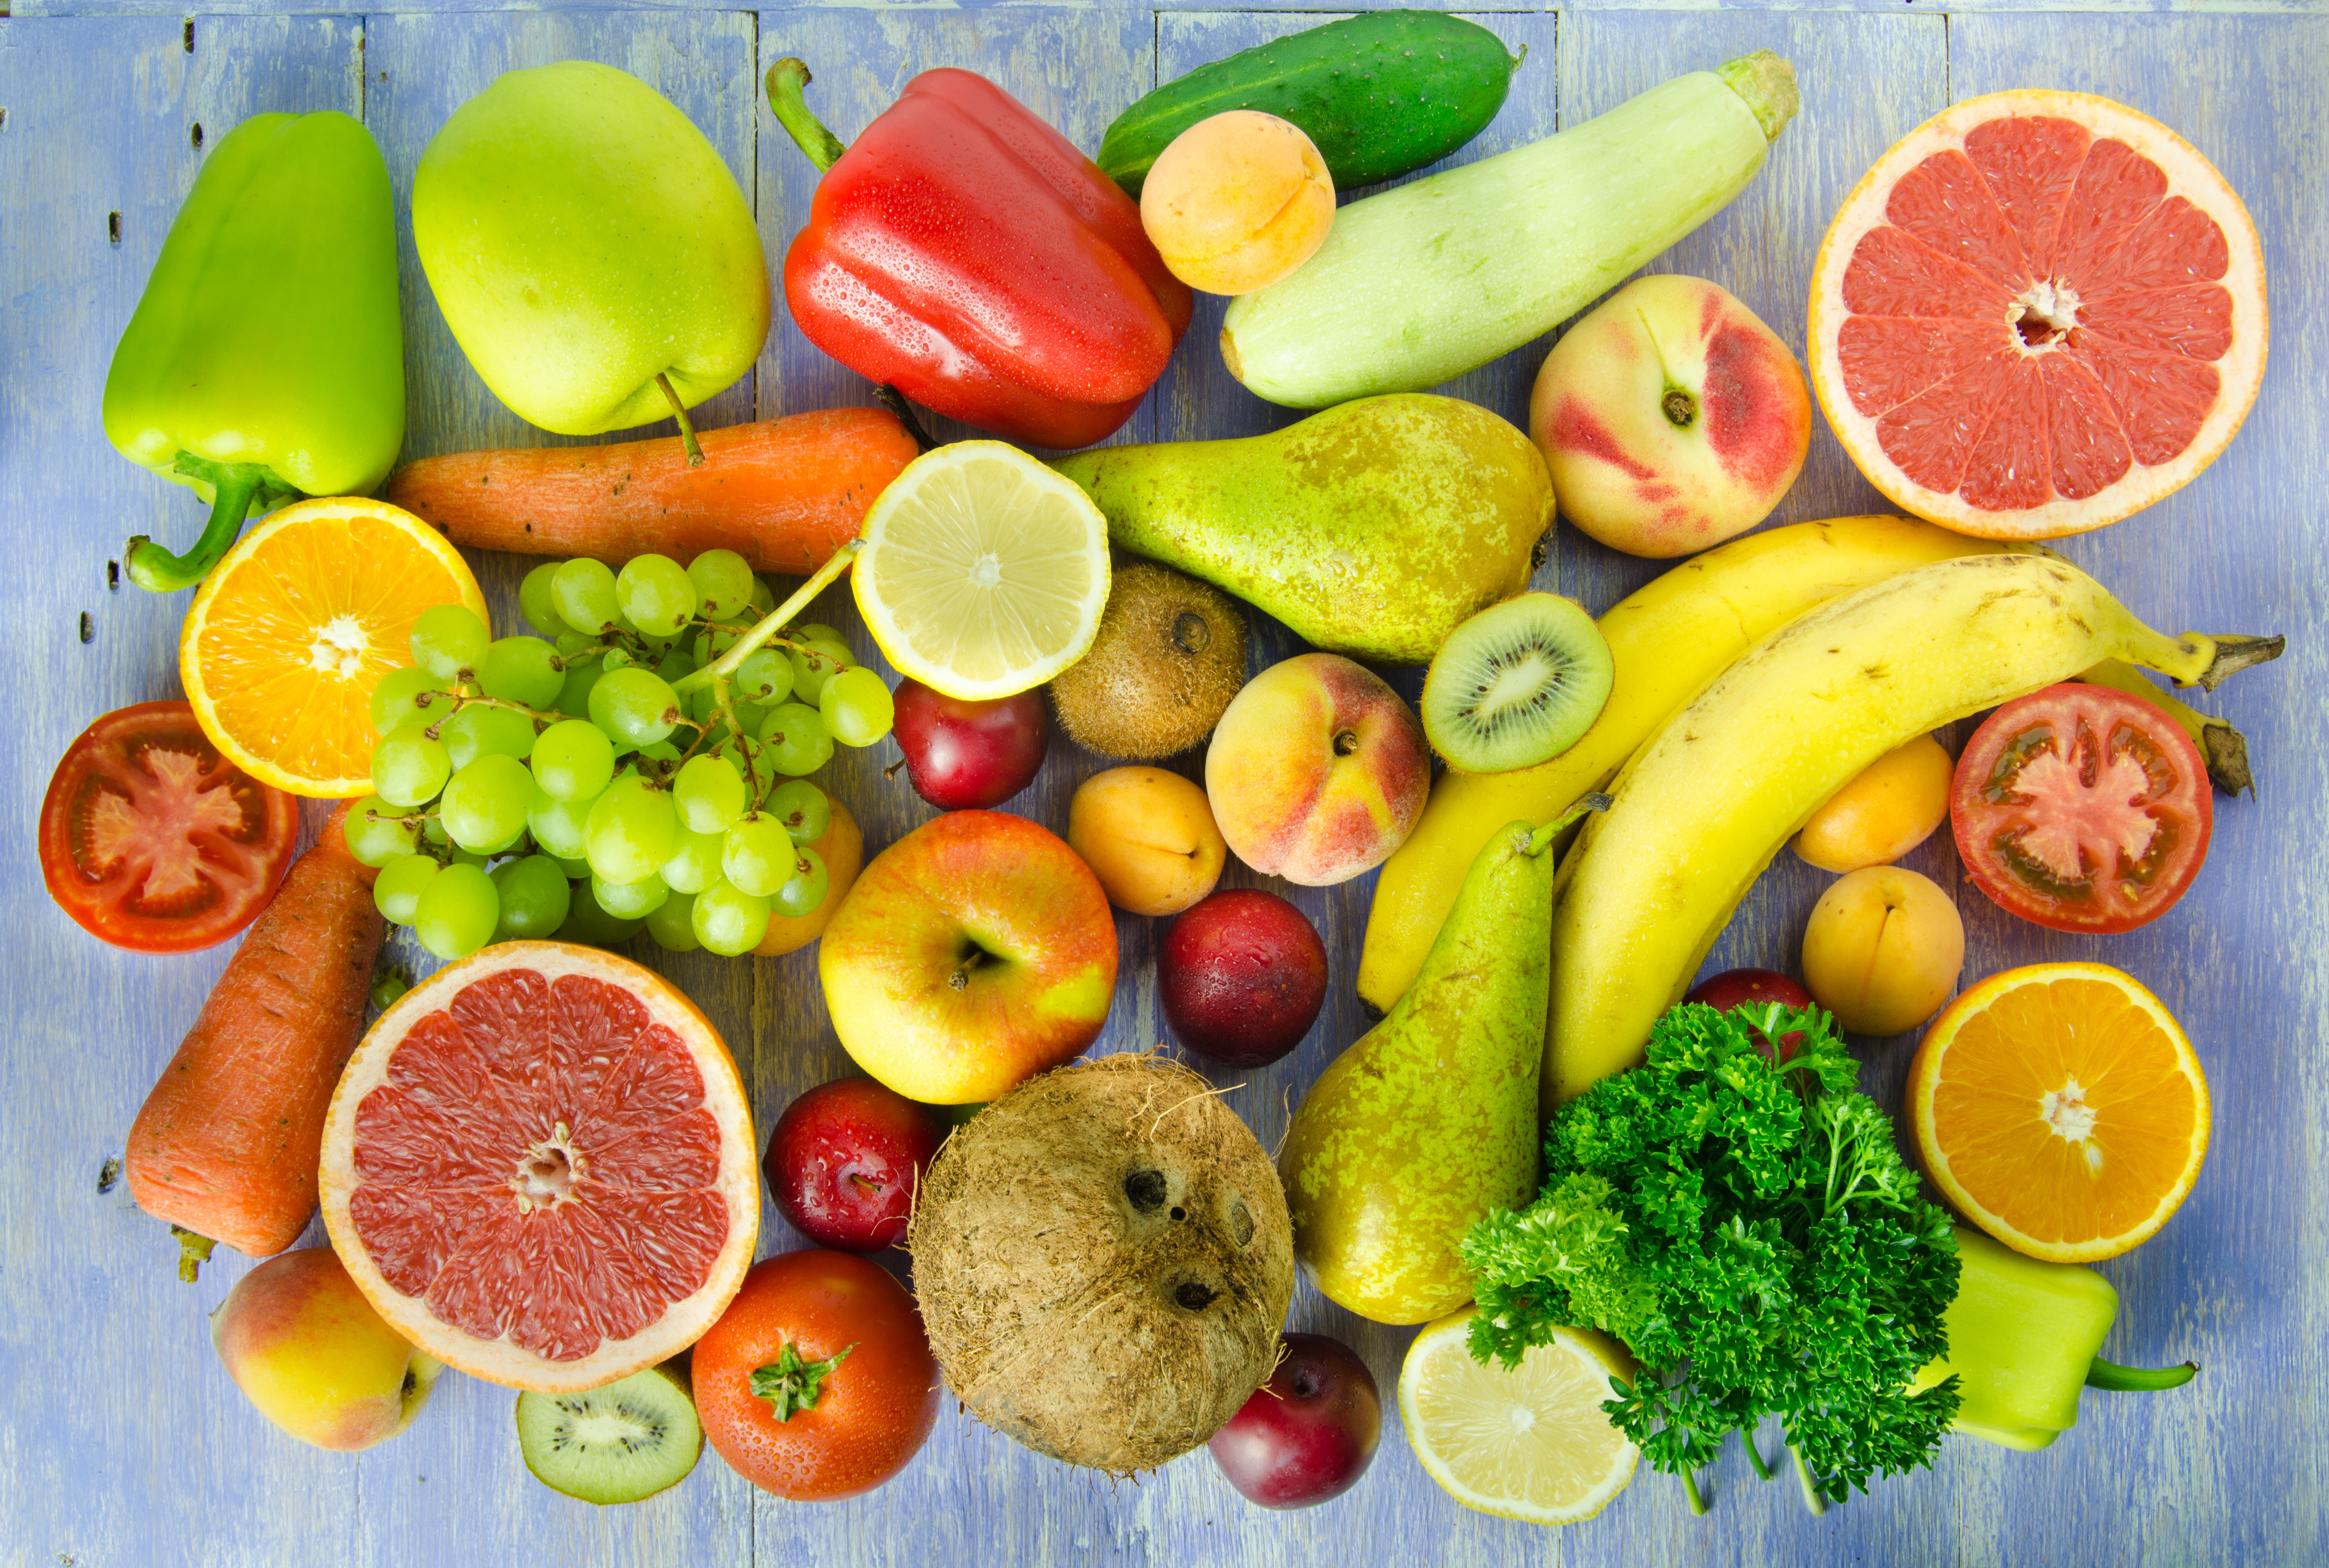 Ешь больше фруктов и овощей. Овощи и фрукты. Овощи, фрукты, ягоды. Obishi i frukti. Овощи b ahernb.